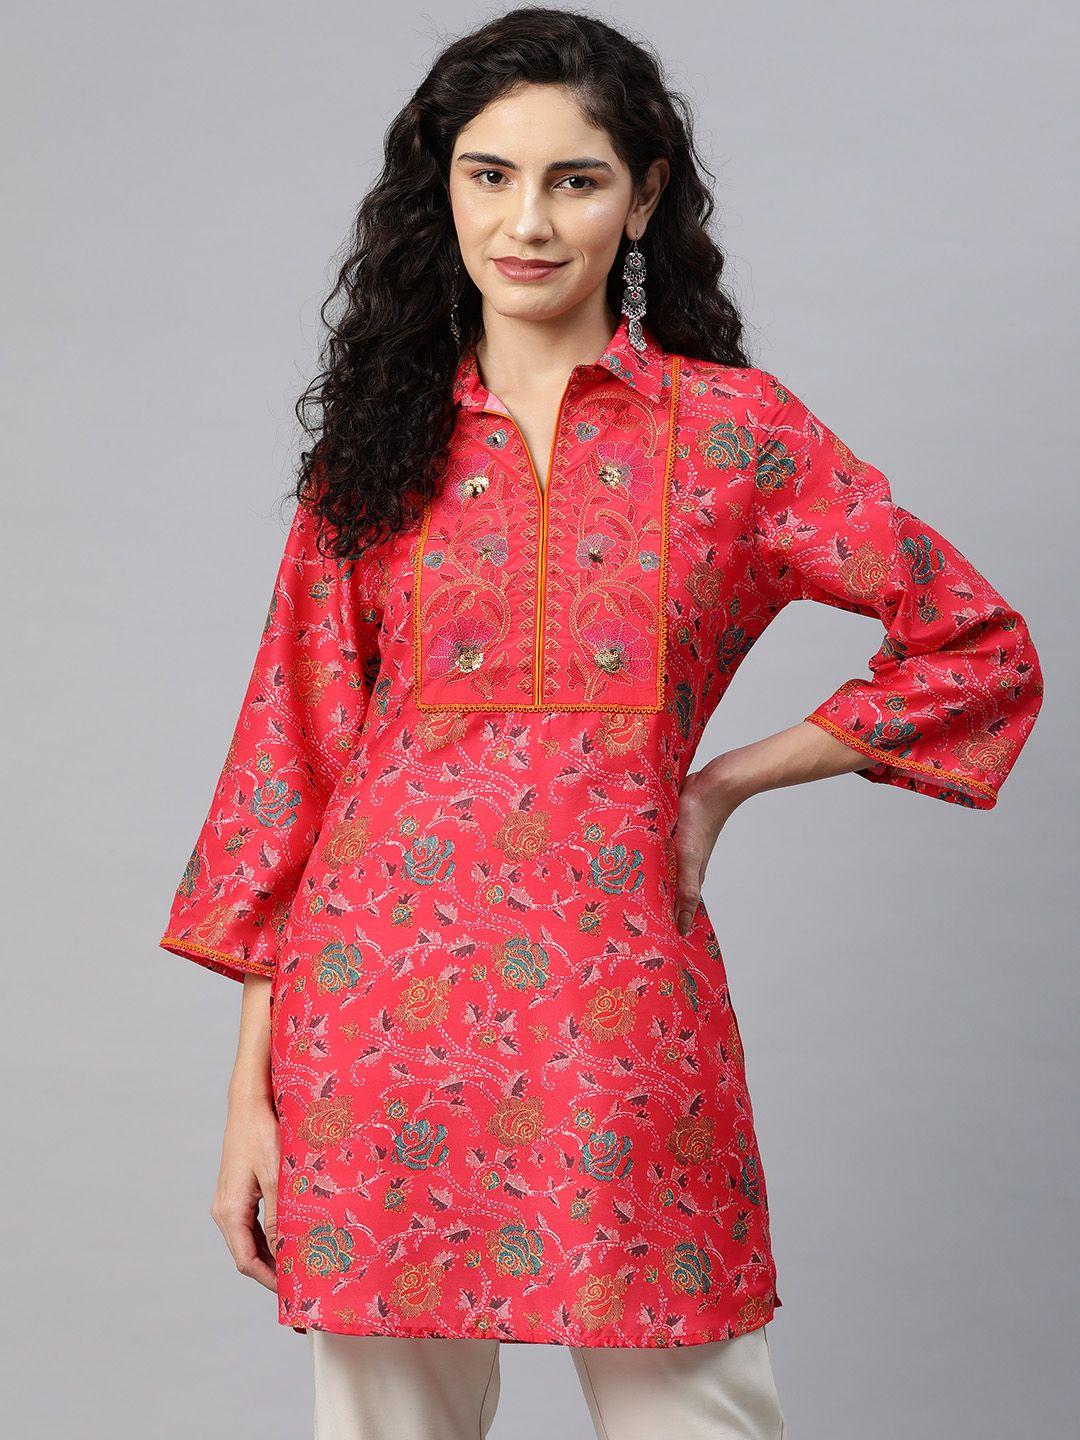 nayam by lakshita shirt collar printed tunic